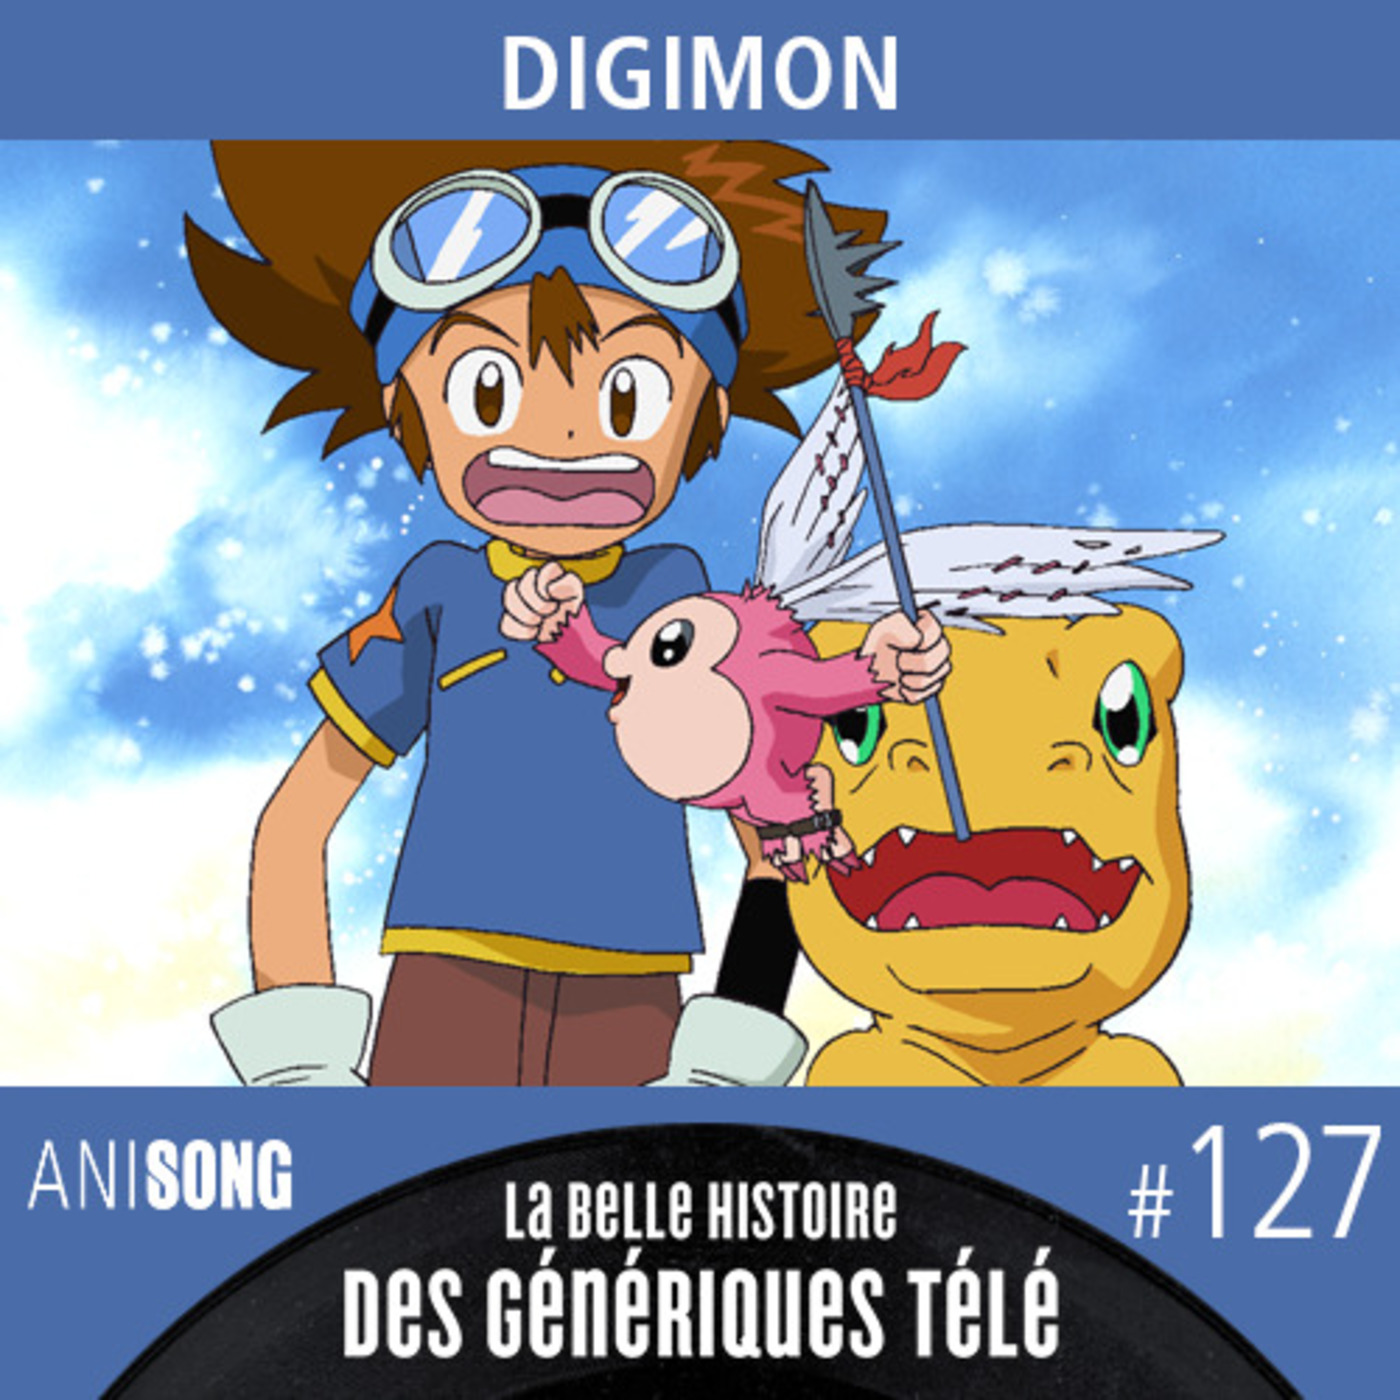 La Belle Histoire des Génériques Télé #127 | Digimon